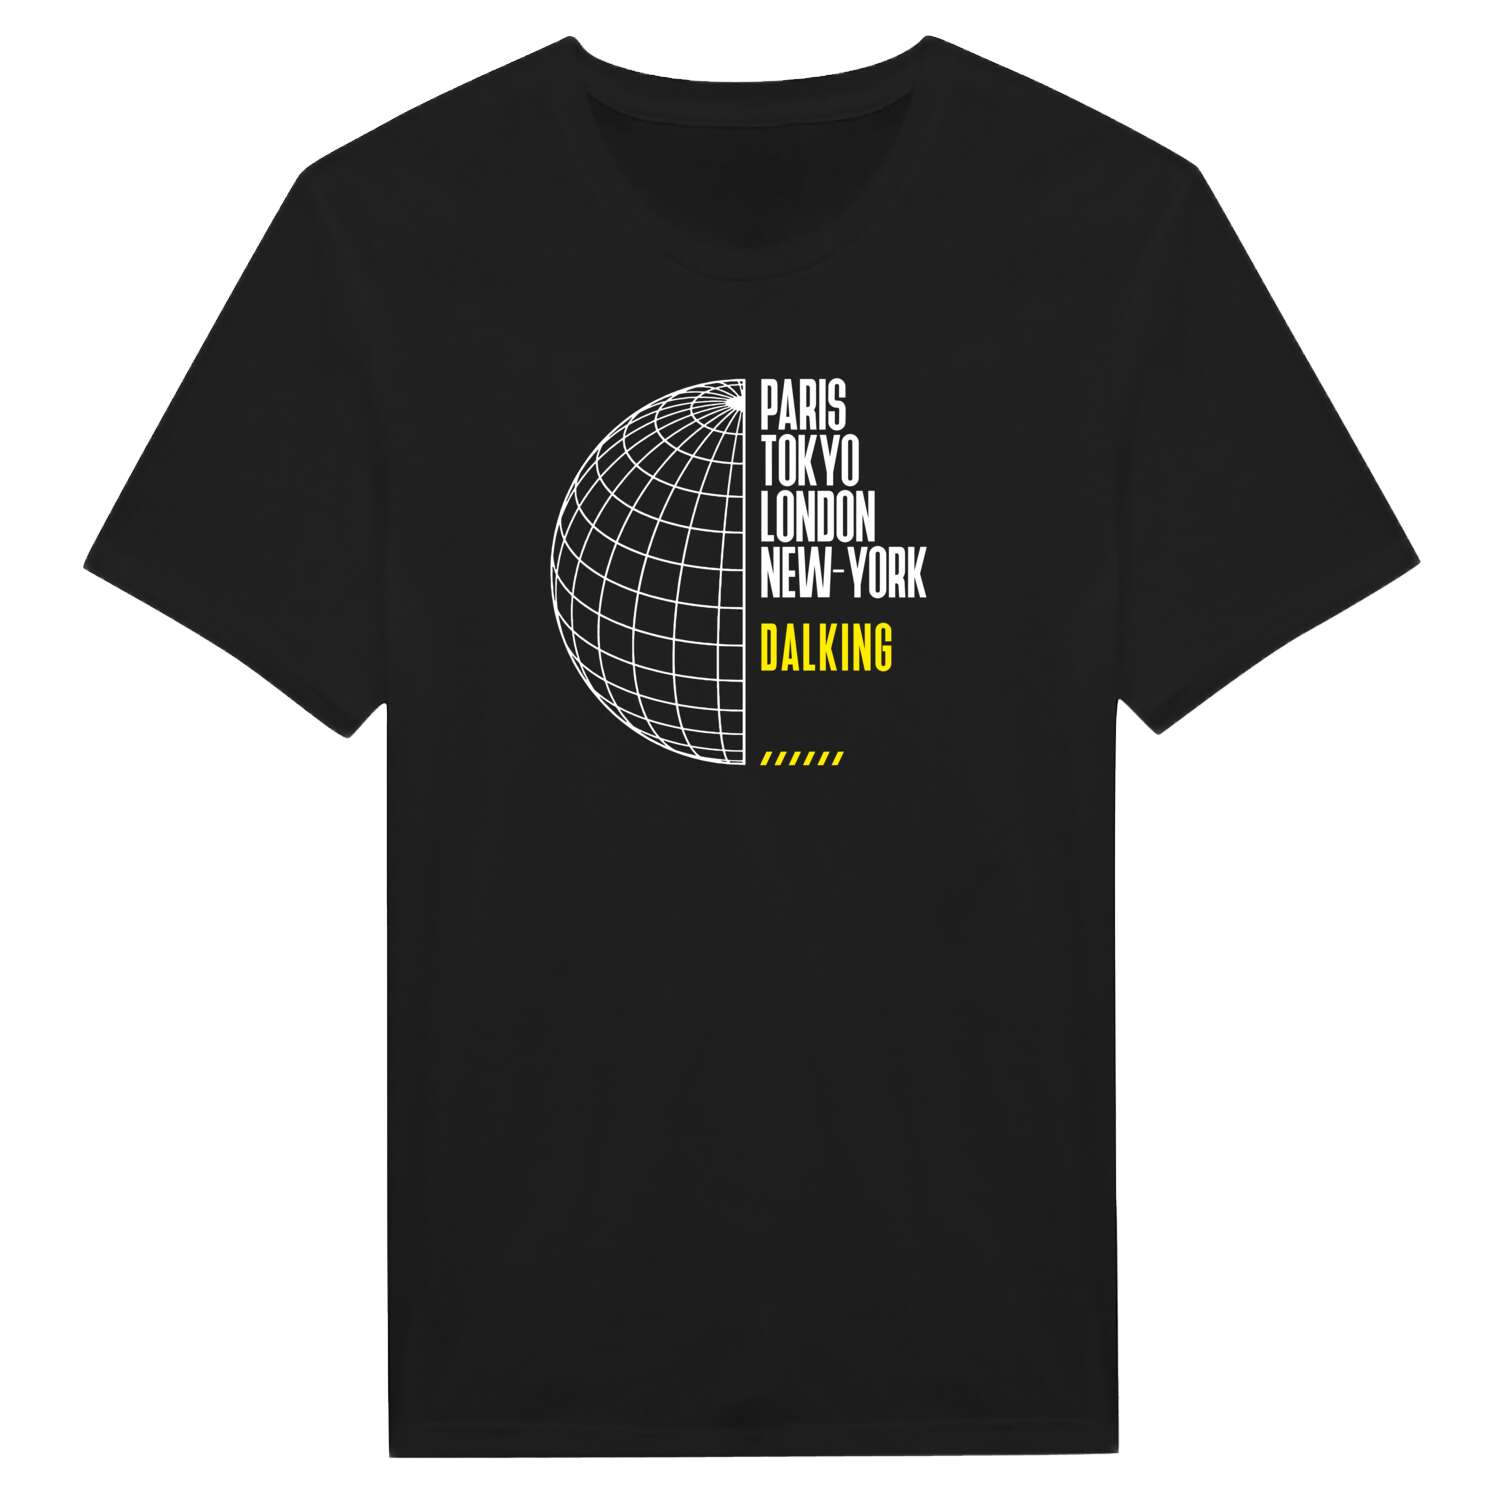 Dalking T-Shirt »Paris Tokyo London«